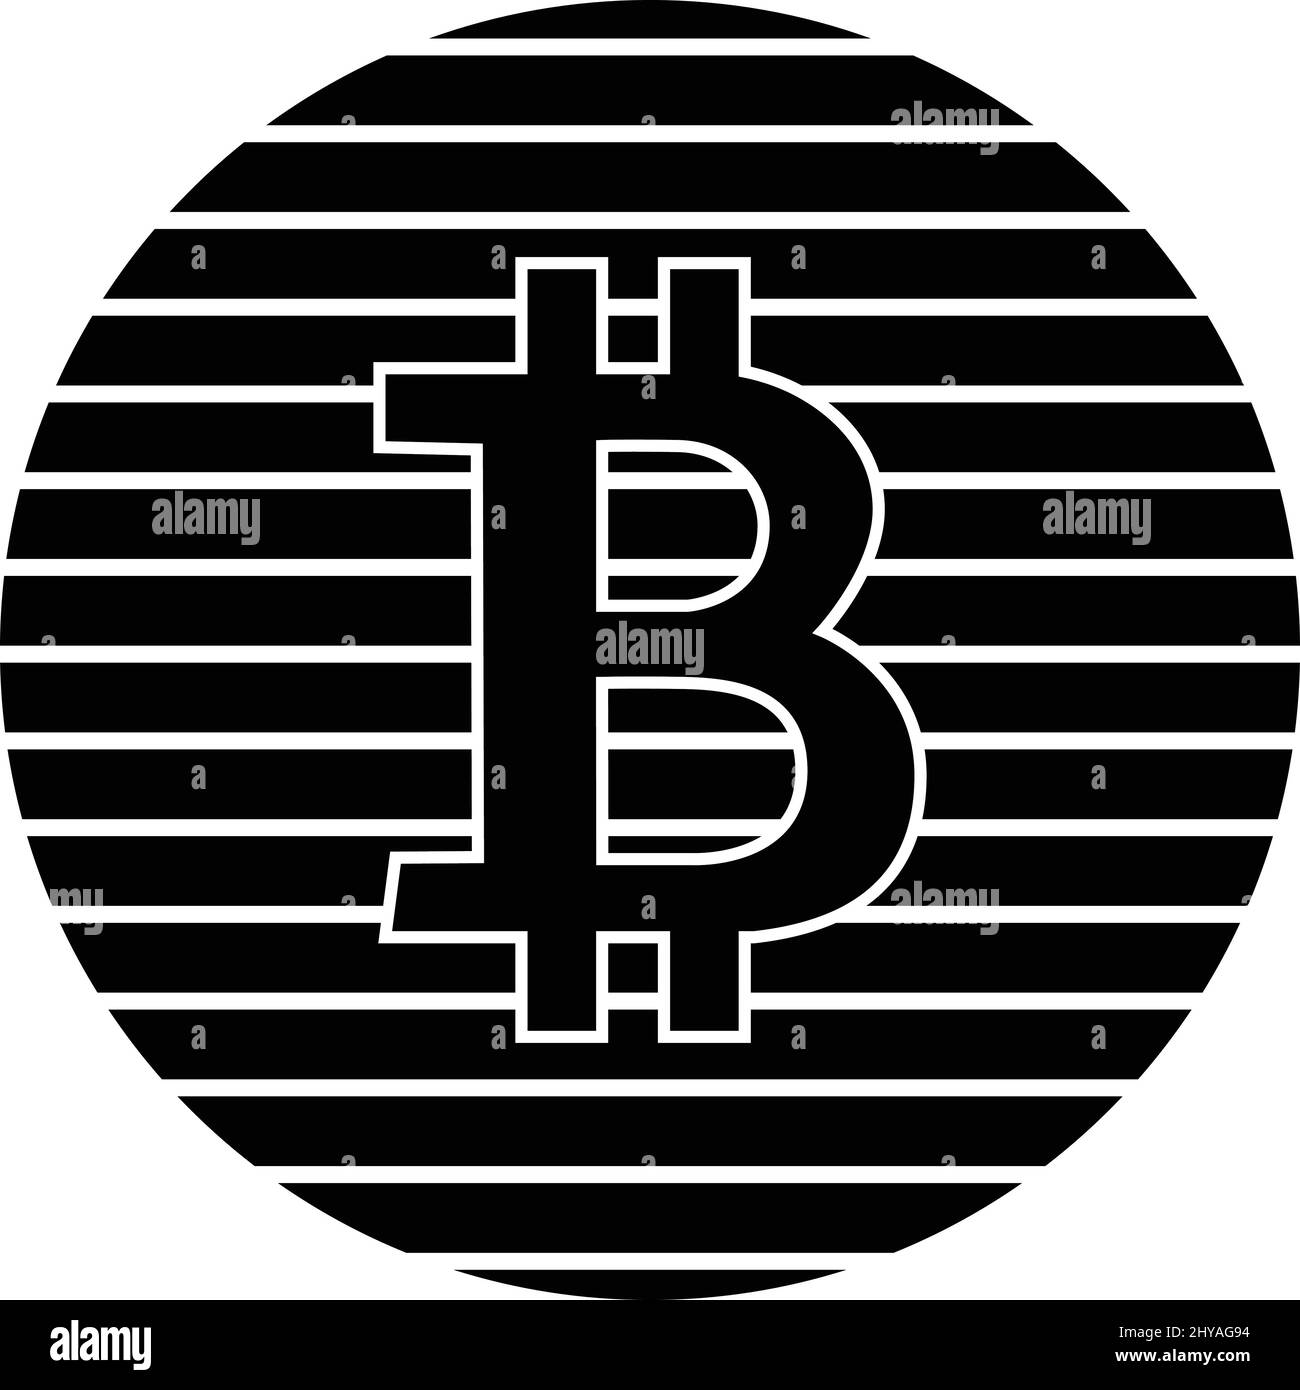 Bitcoin logo design Stock Vector